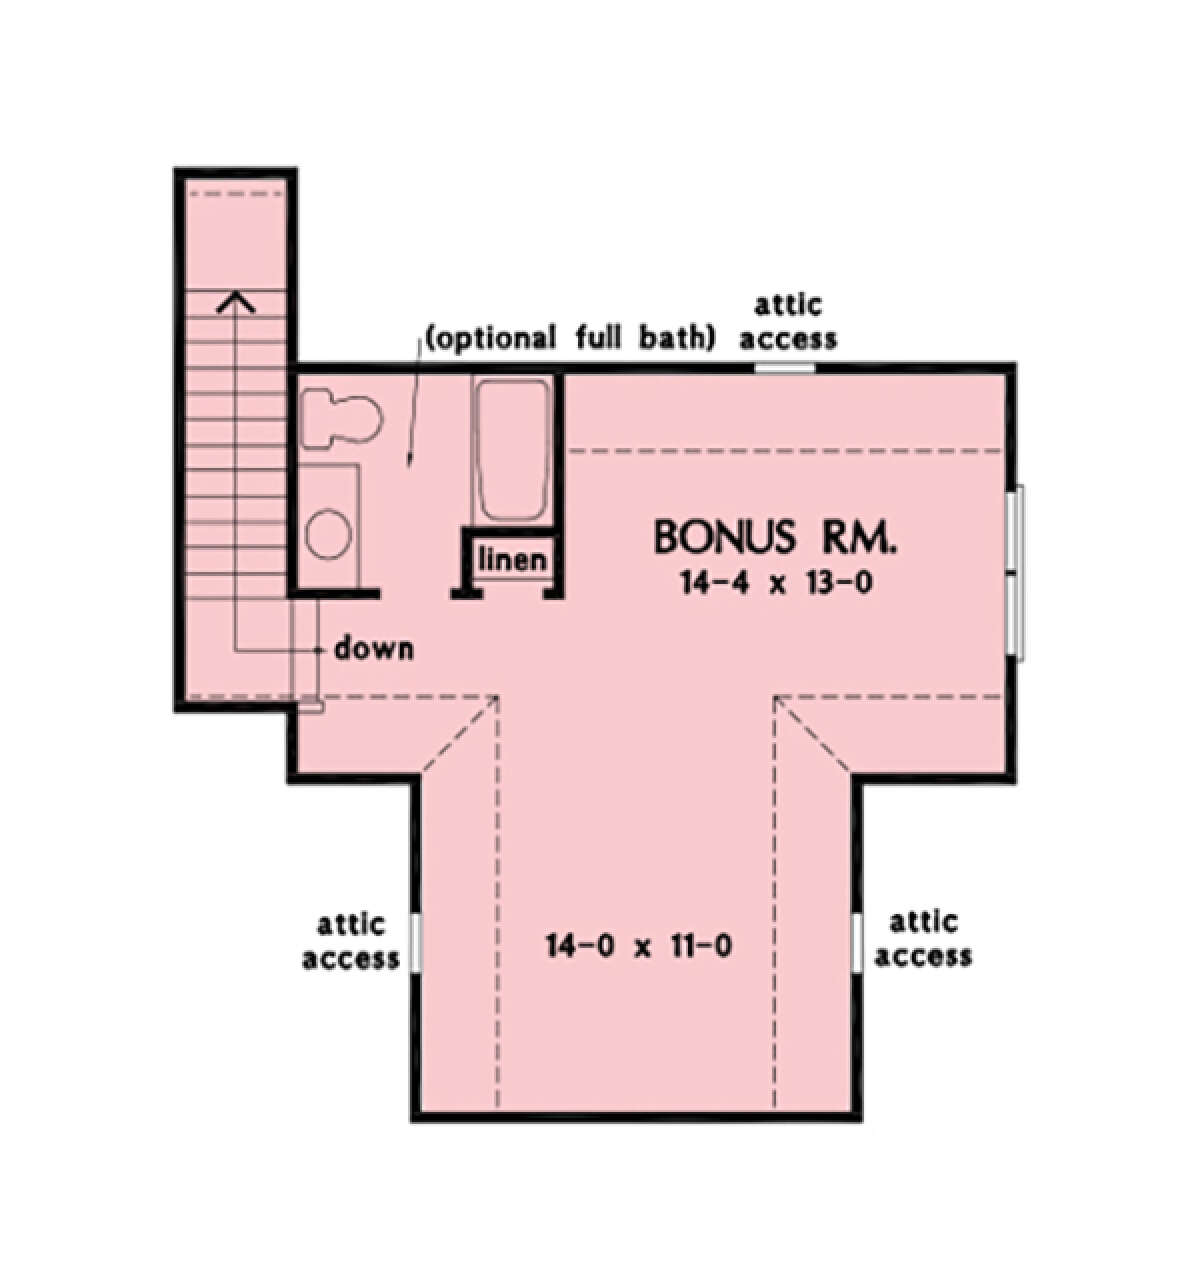 Bonus Room for House Plan #2865-00402